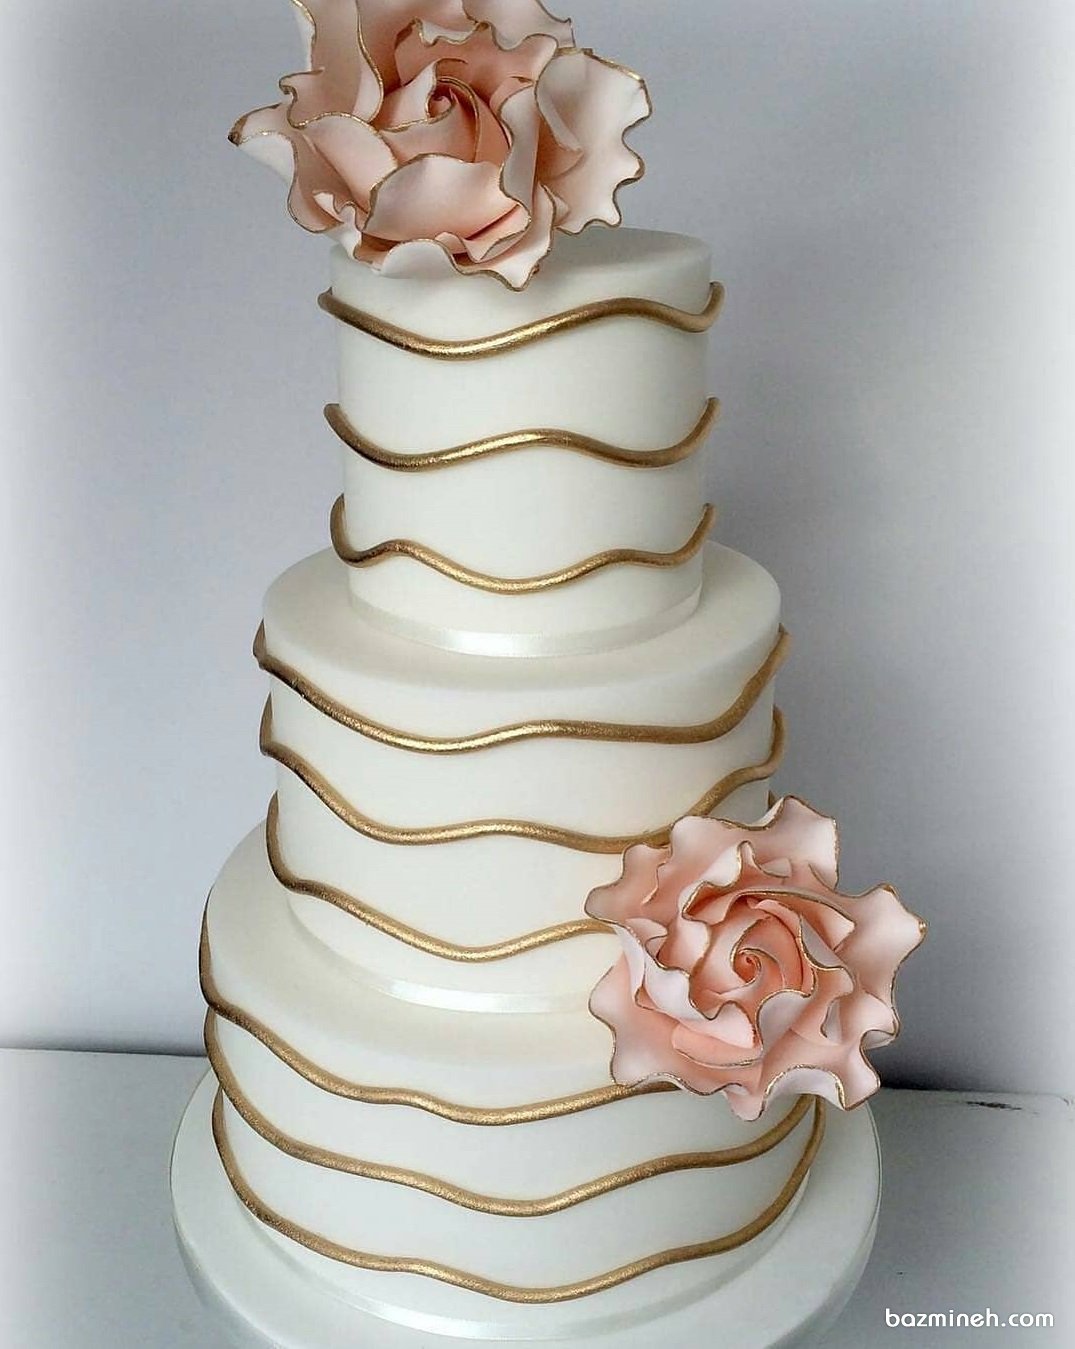 کیک سه طبقه جشن نامزدی یا سالگرد ازدواج تزیین شده با گلهای فوندانت گلبهی